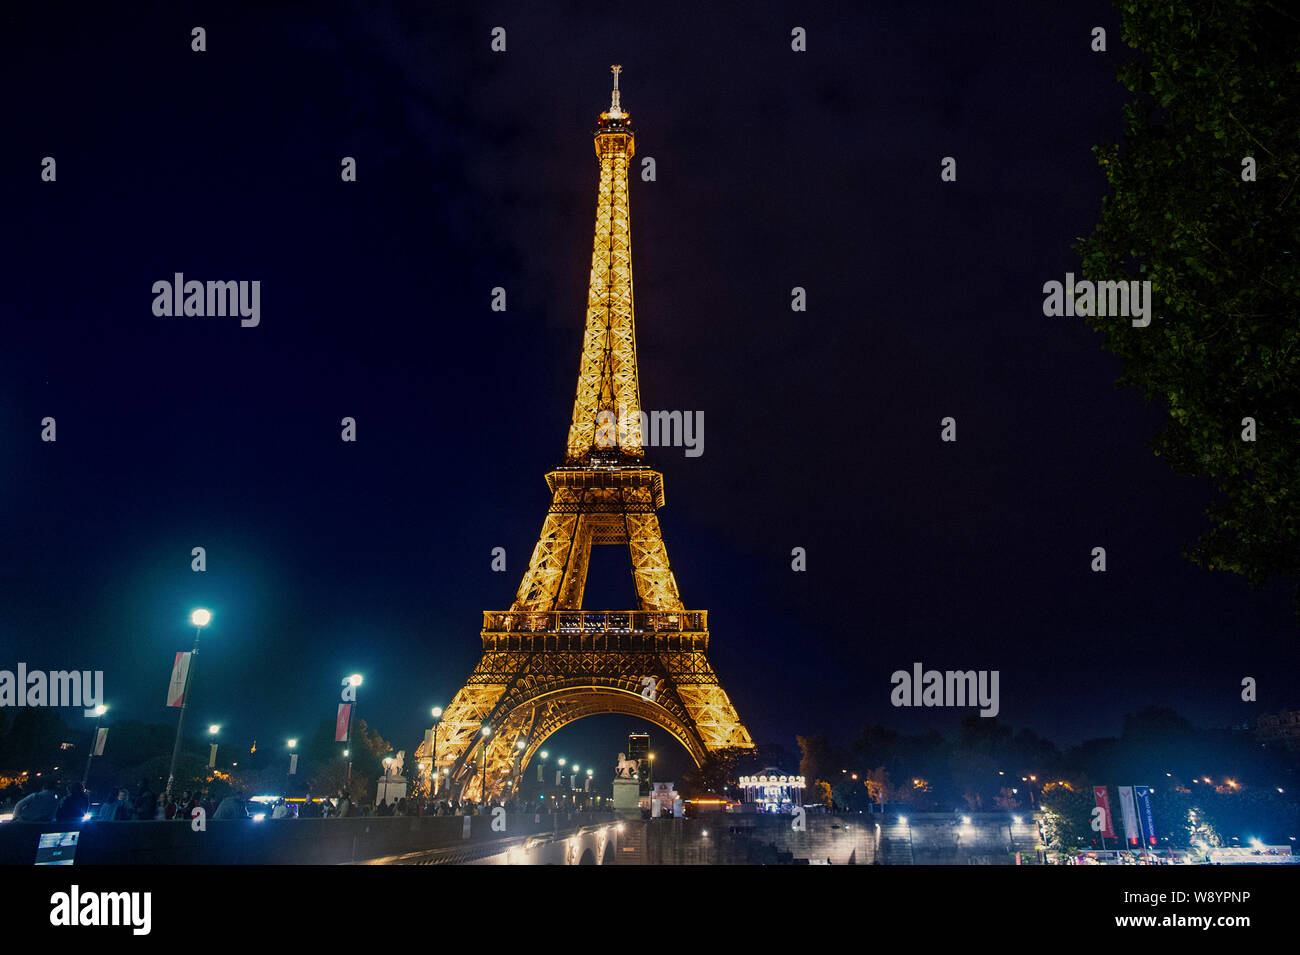 Paris, Frankreich, 23. September 2017: Paris Eiffelturm bei Nacht  beleuchtung. Eiffelturm in Beleuchtung Farbe. Symbol für Frankreich.  Prickelnde Momente der Eiffelturm Stockfotografie - Alamy